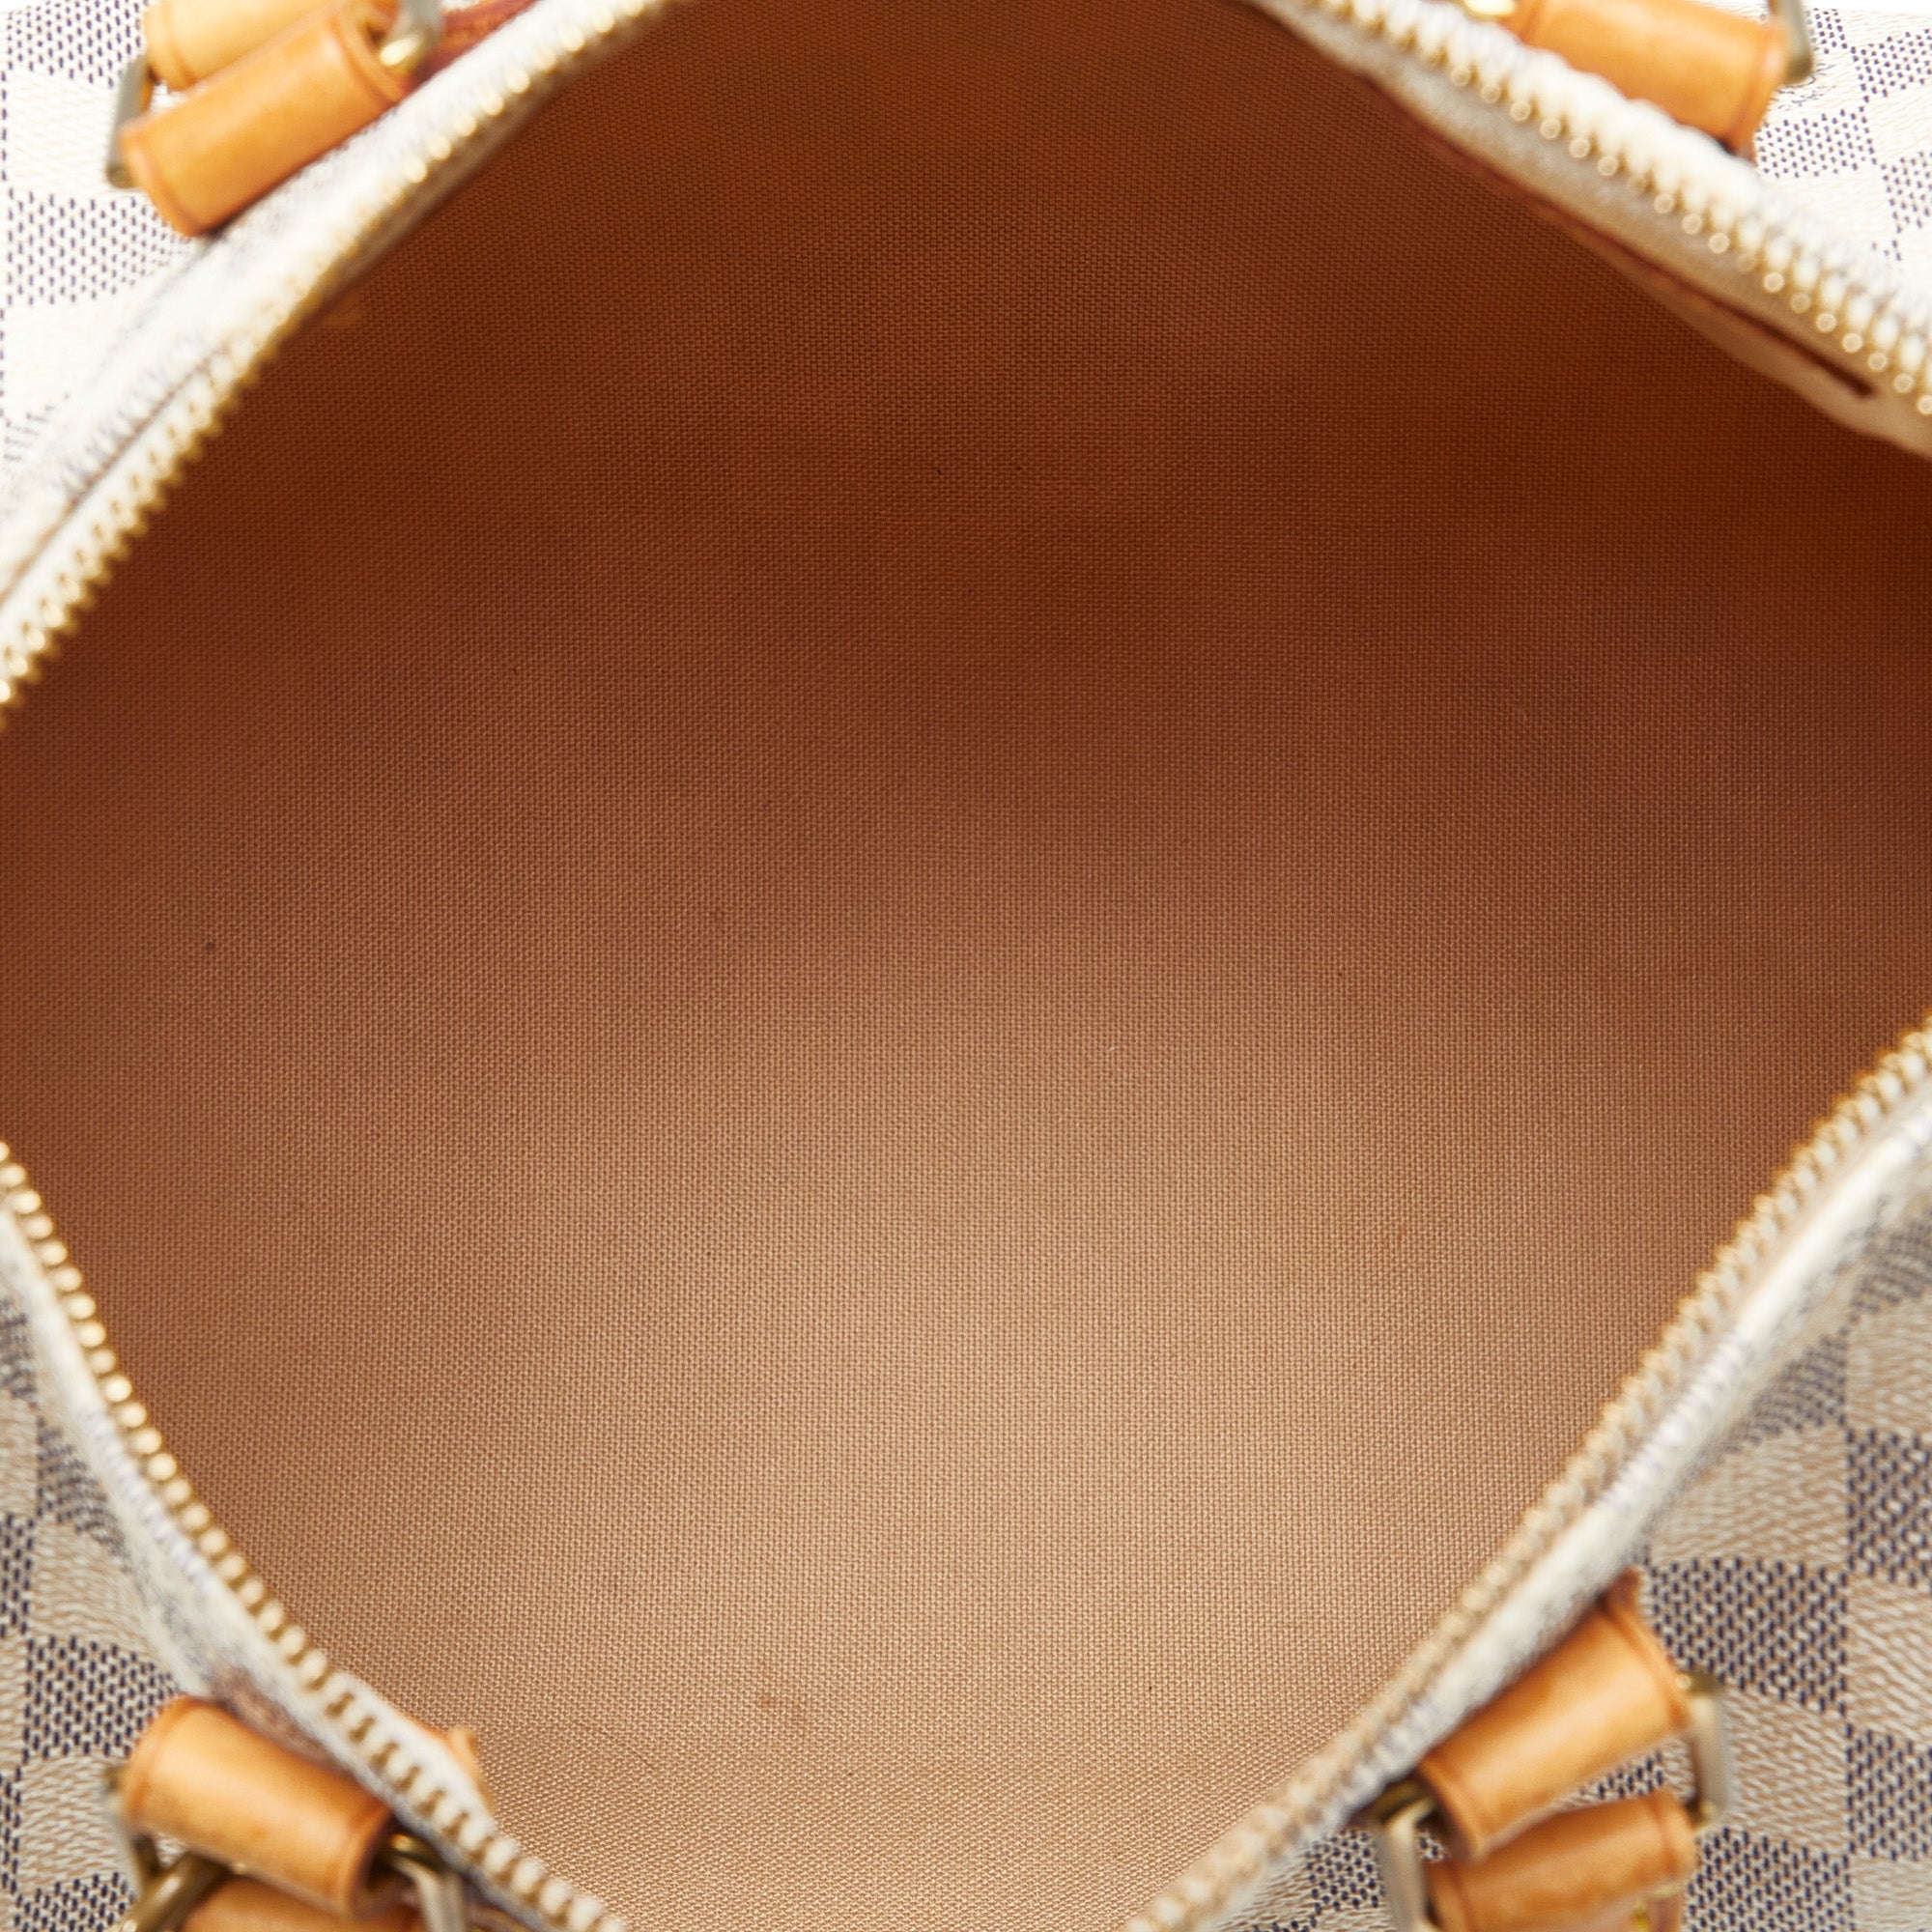 White Louis Vuitton Damier Azur Speedy 25 Boston Bag – RvceShops Revival